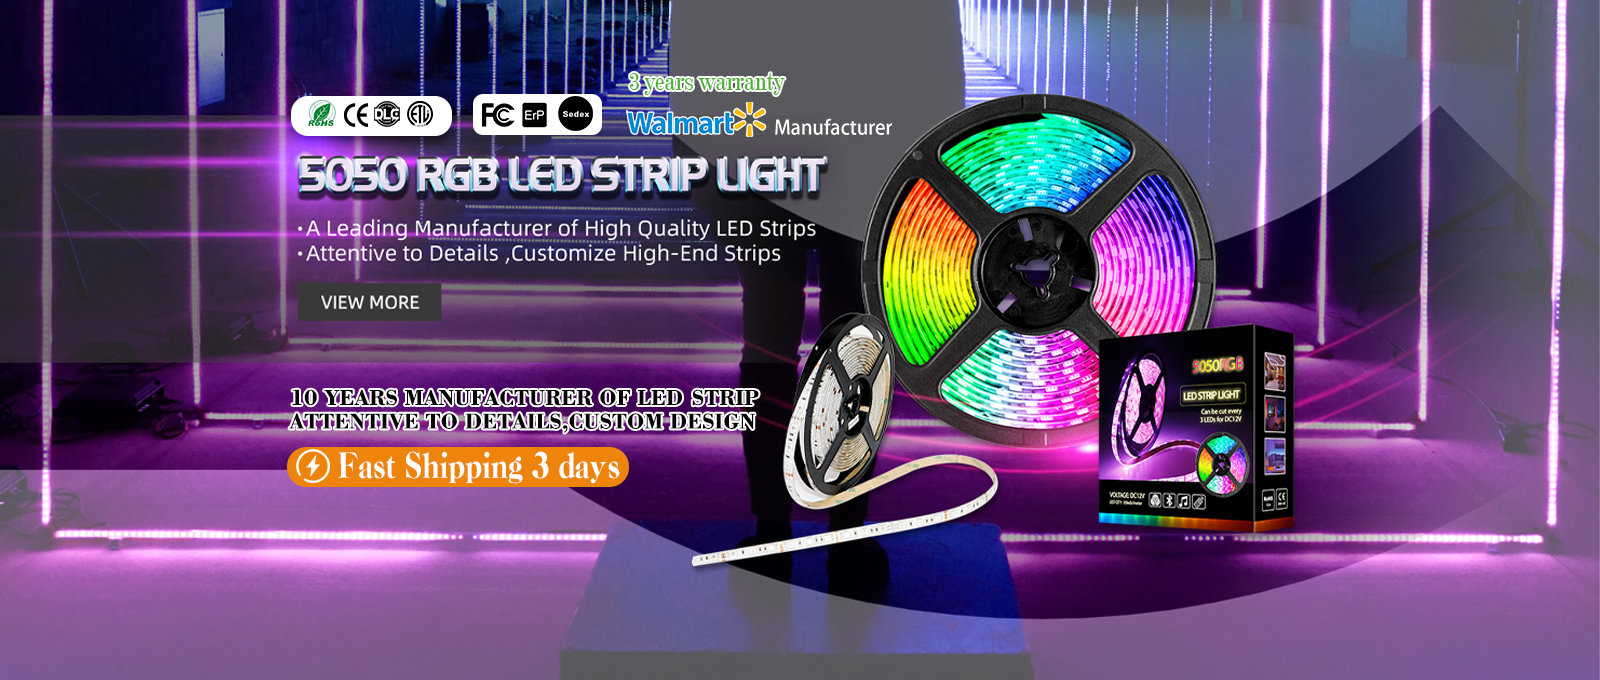 5050 RGB LED STRIP